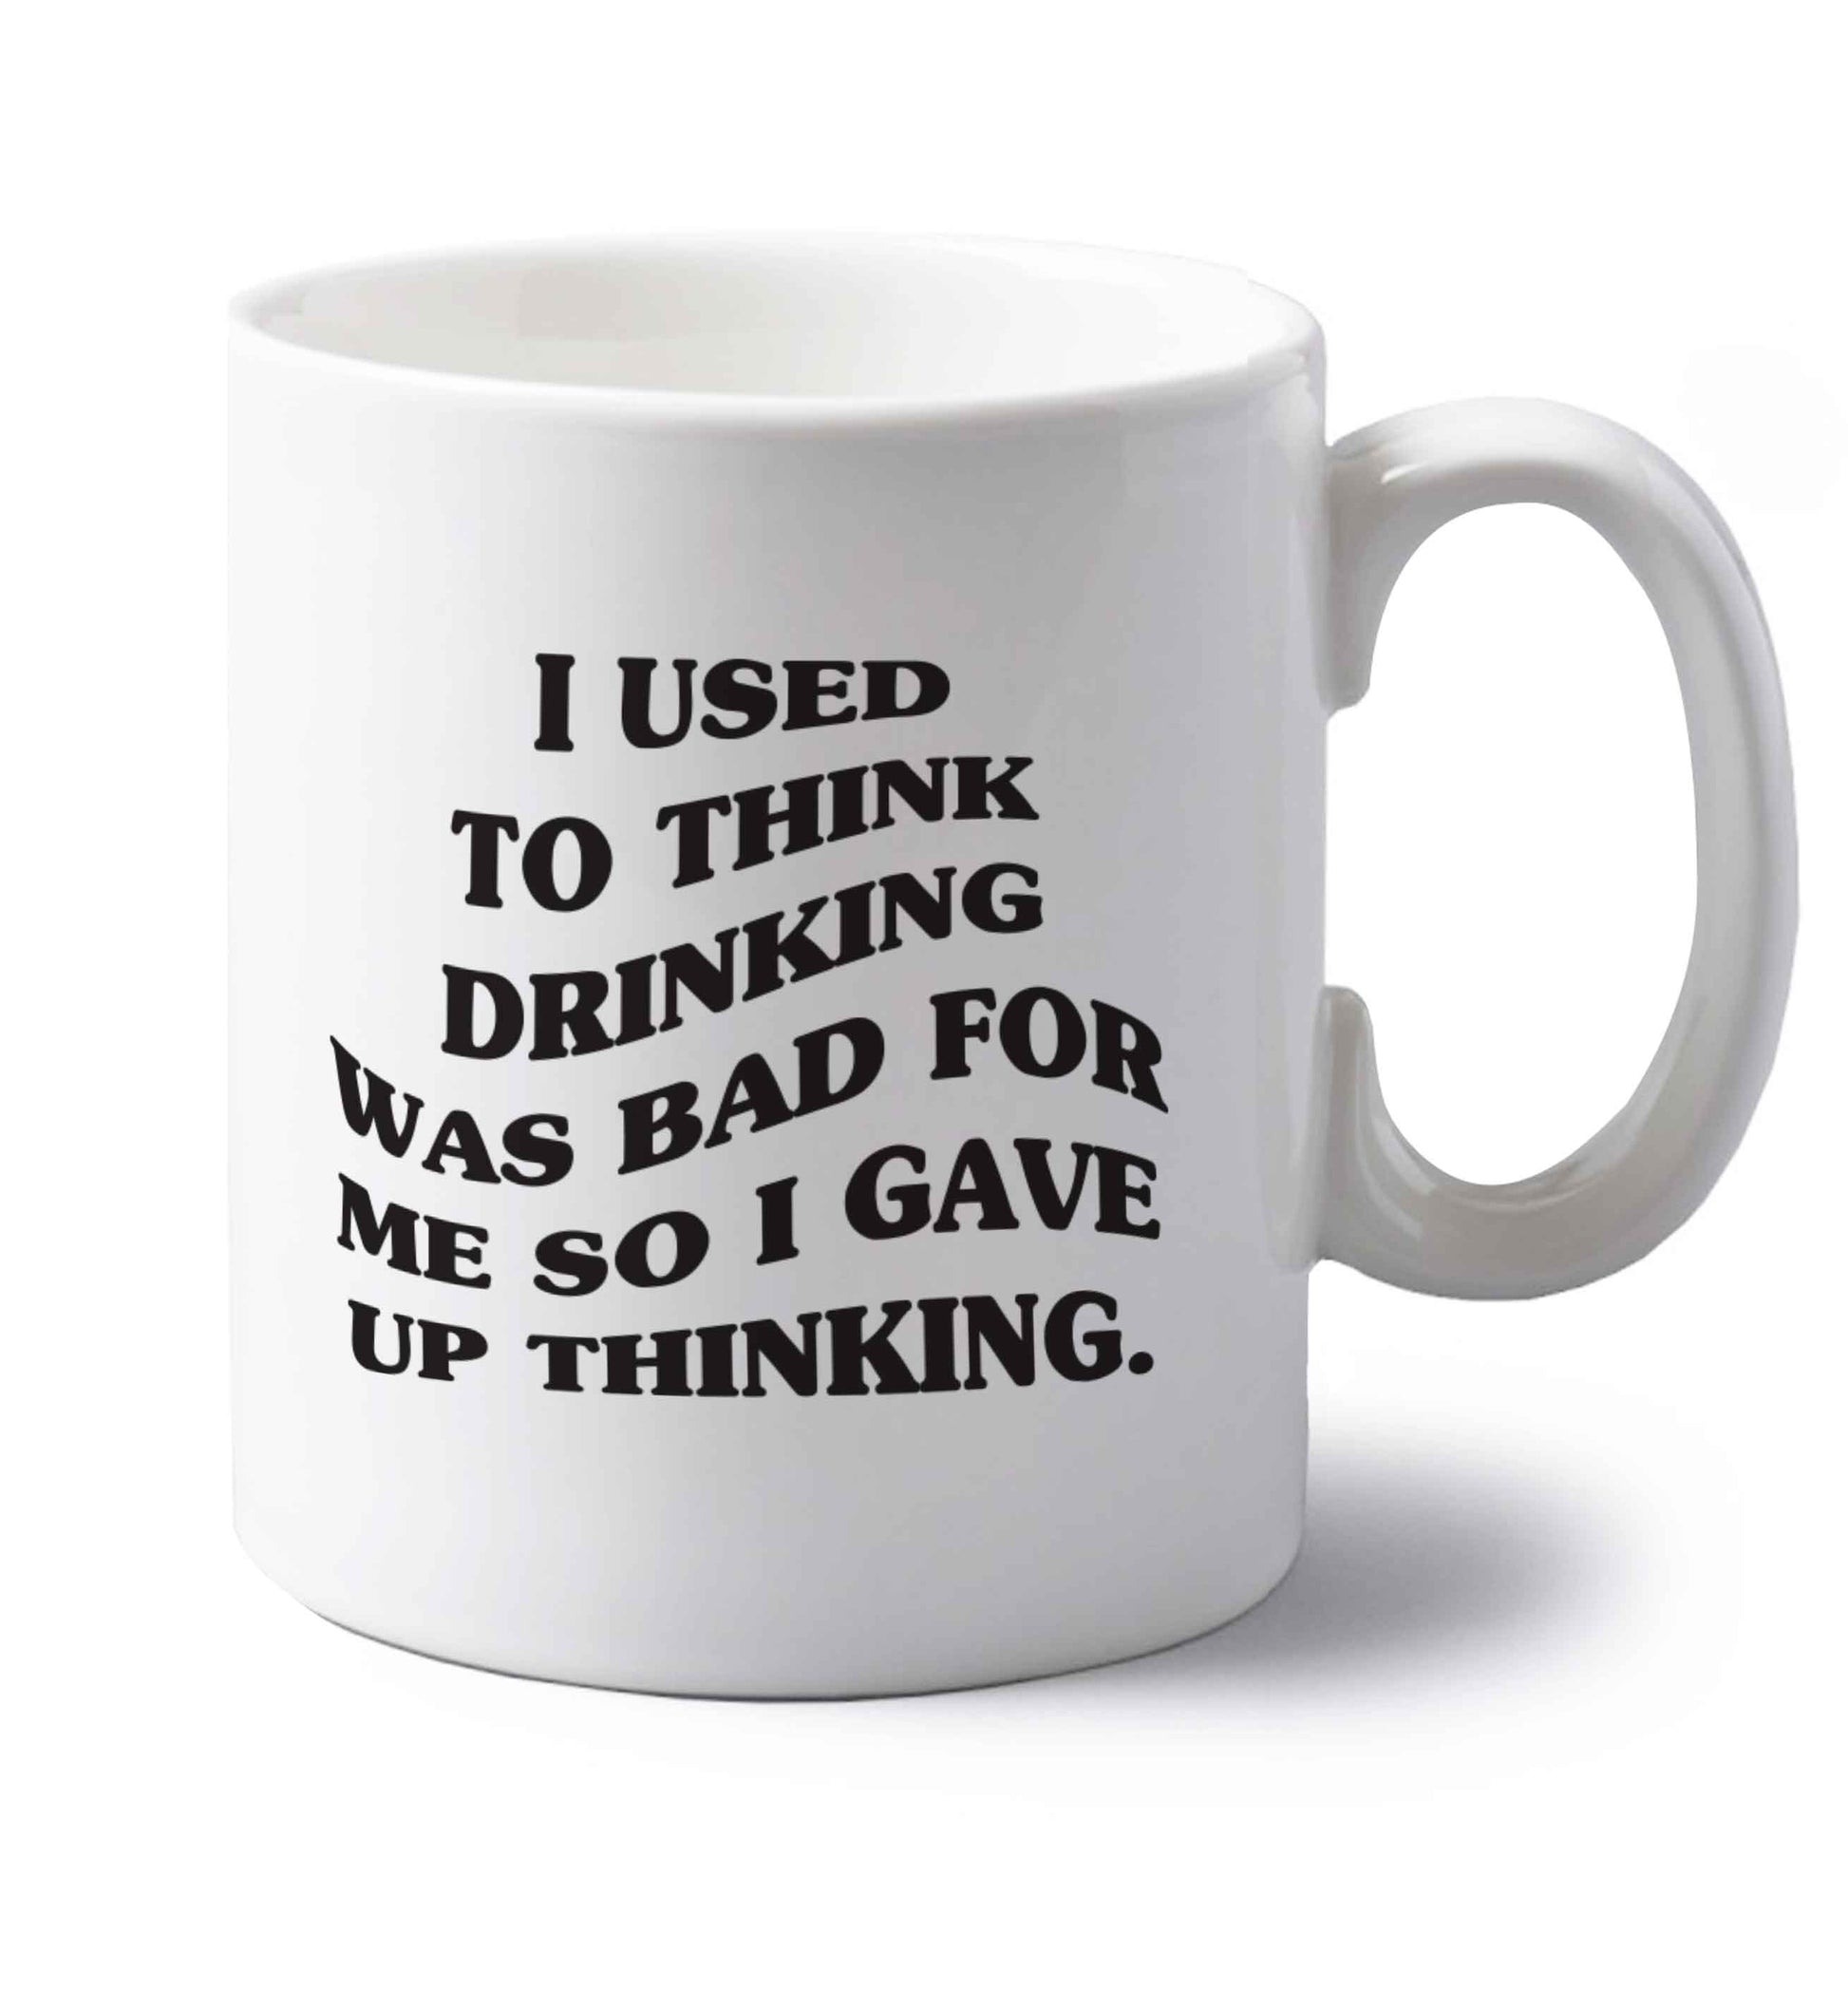 I used to think drinking was bad so I gave up thinking left handed white ceramic mug 